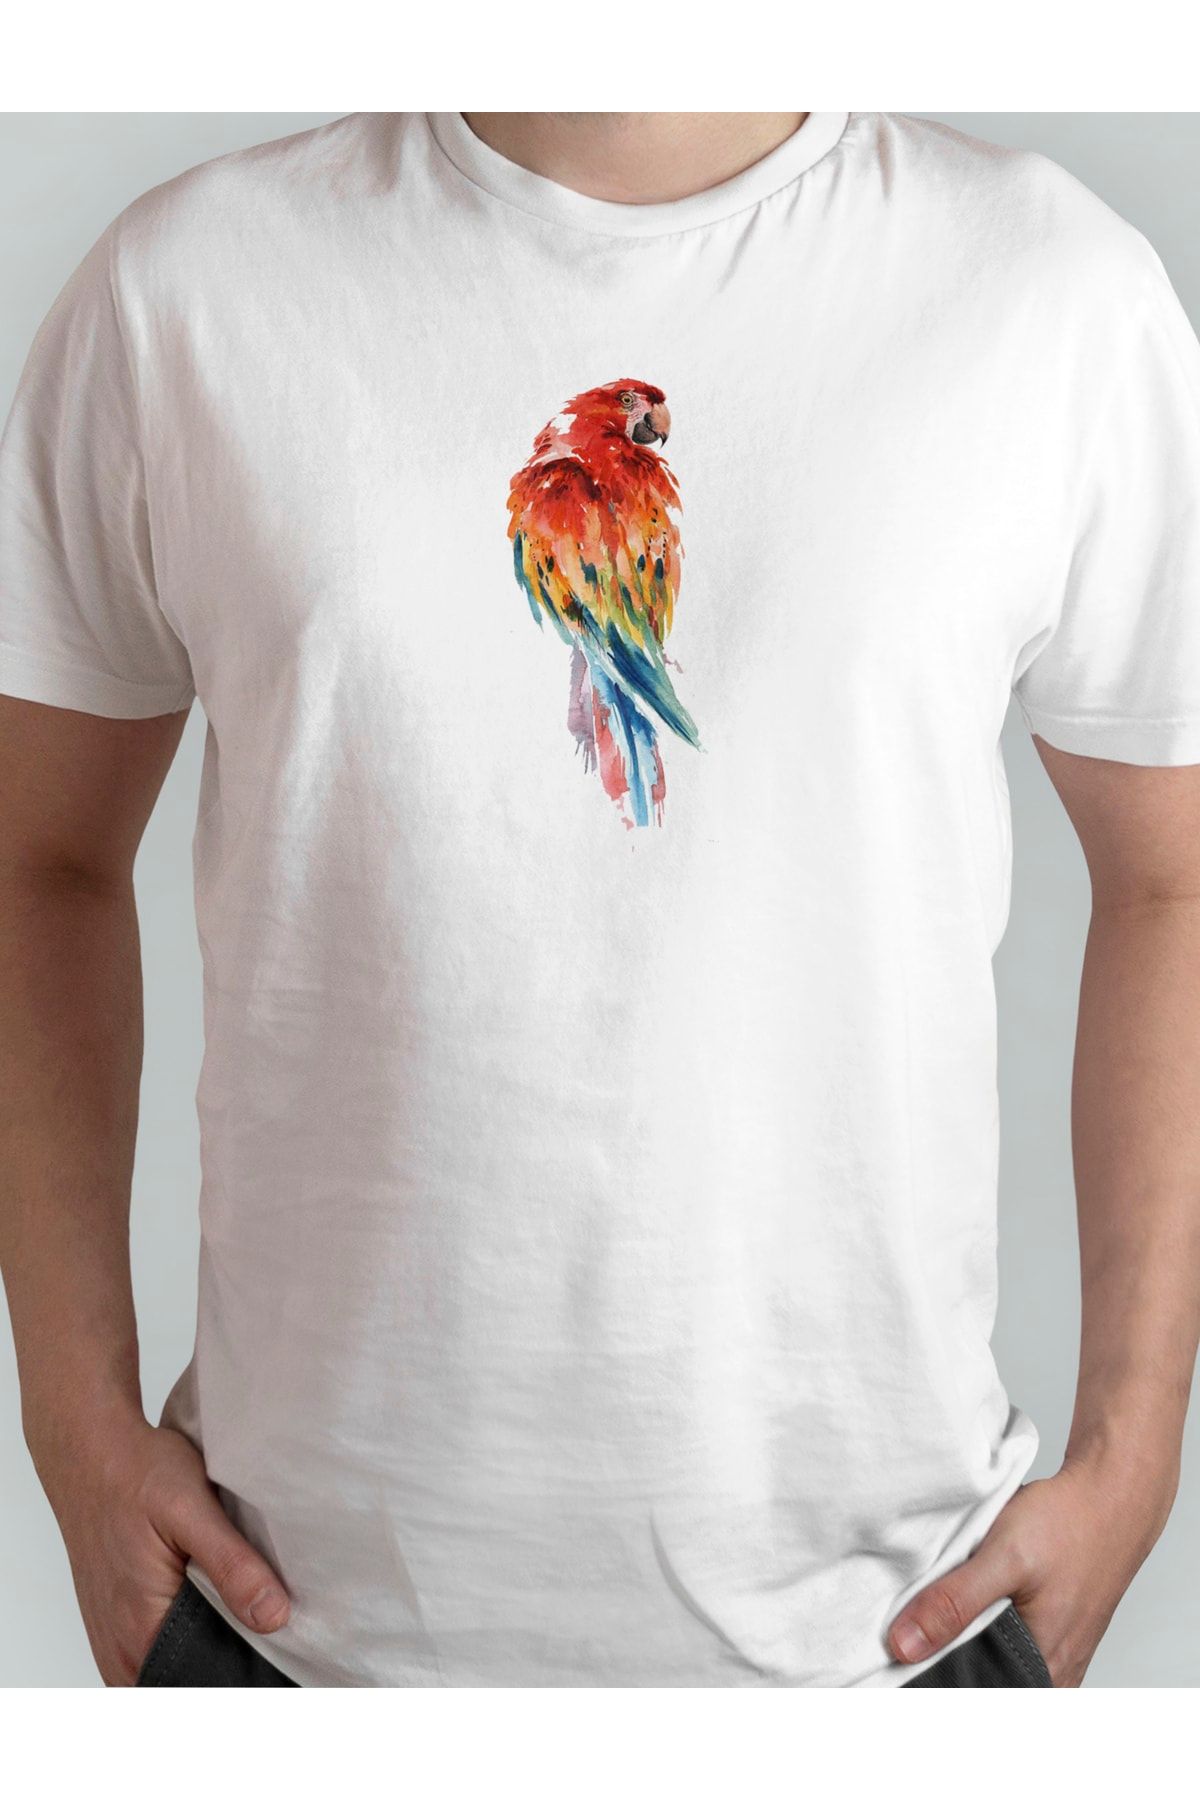 Xanimal Baskılı Parrot Büyük Beden Pamuklu T-shirt 3xl 4xl 5xl 6xl 7xl